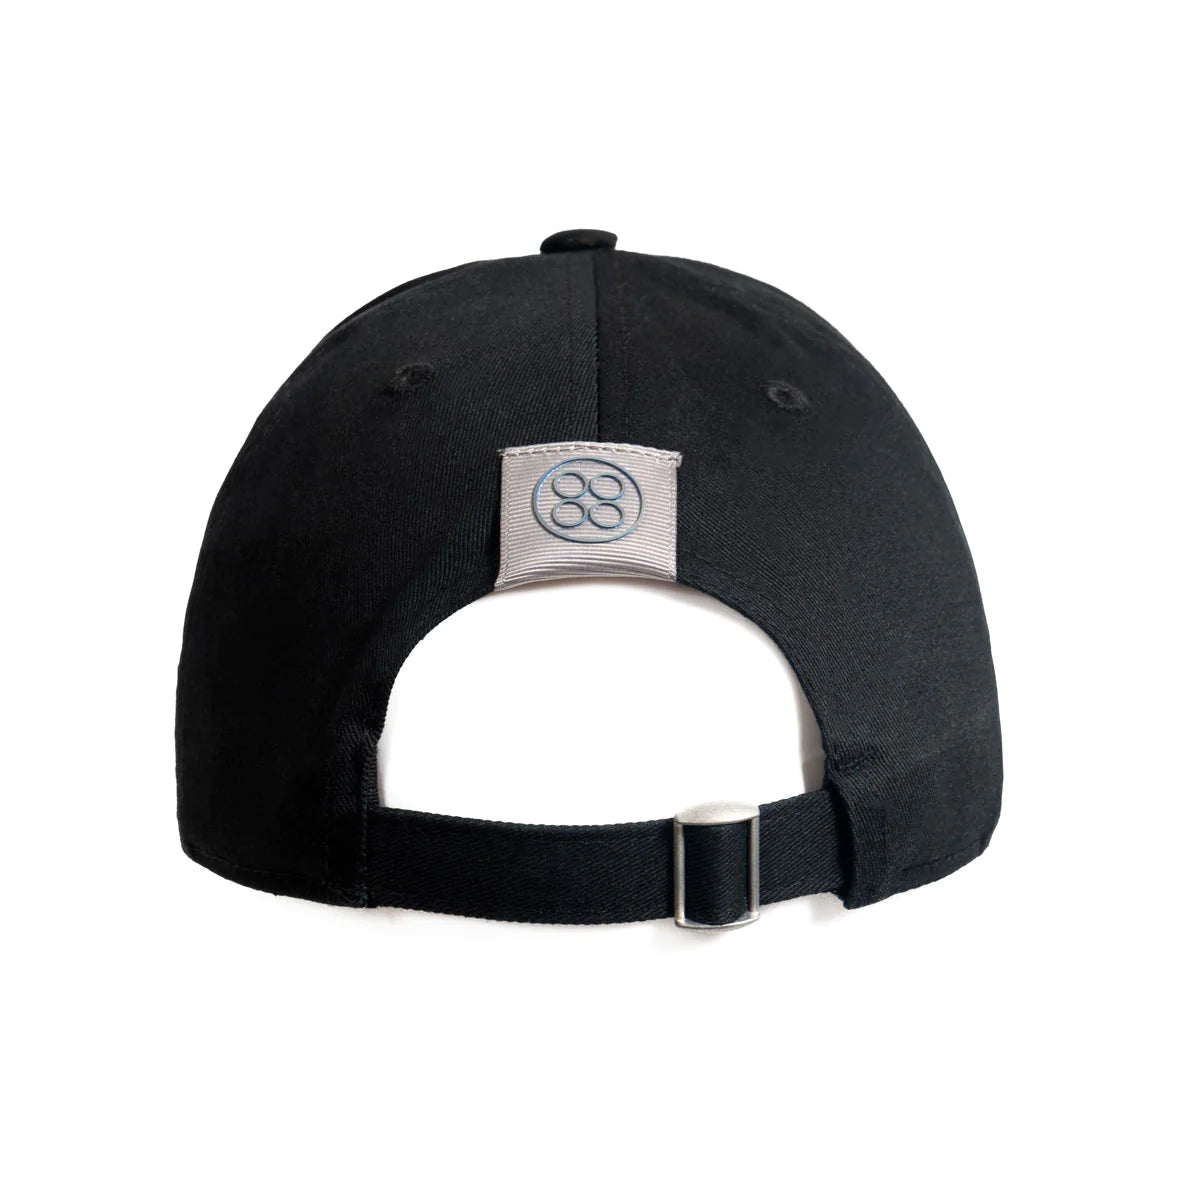 Pagani Automobili 25th Anniversary Cap | Black